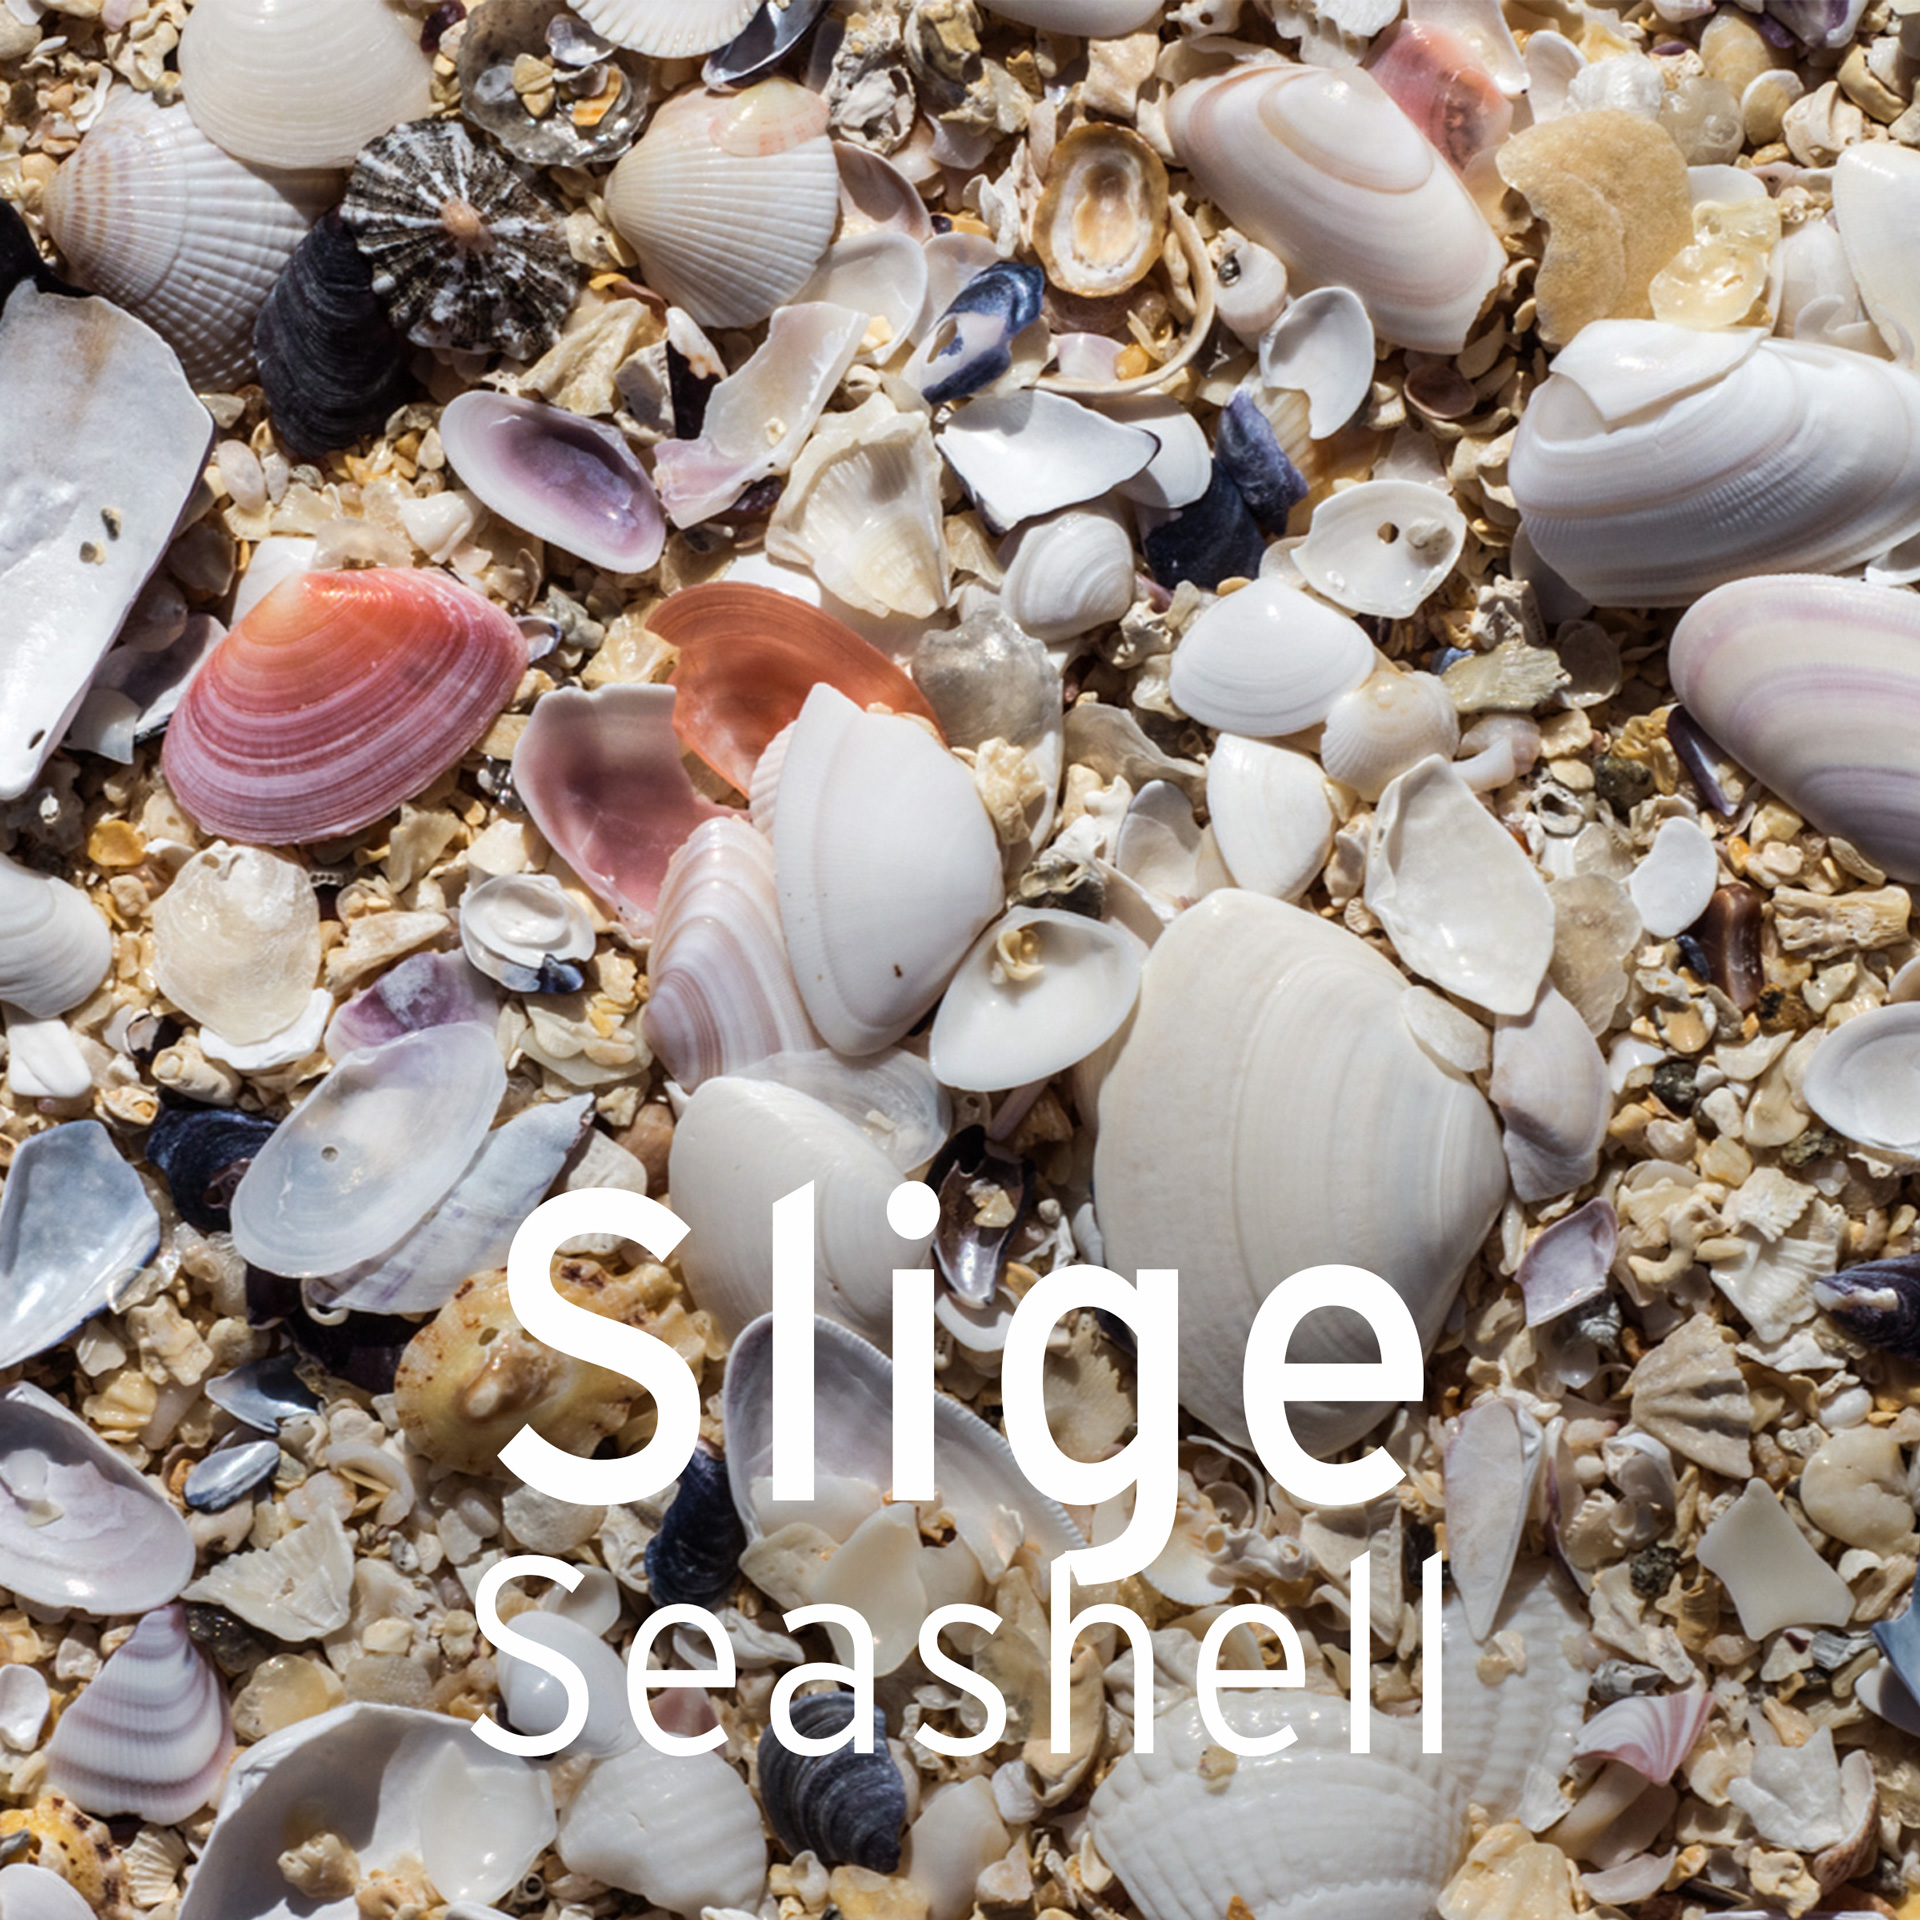 harris tweed authority coastal word of the week seashells janet miles